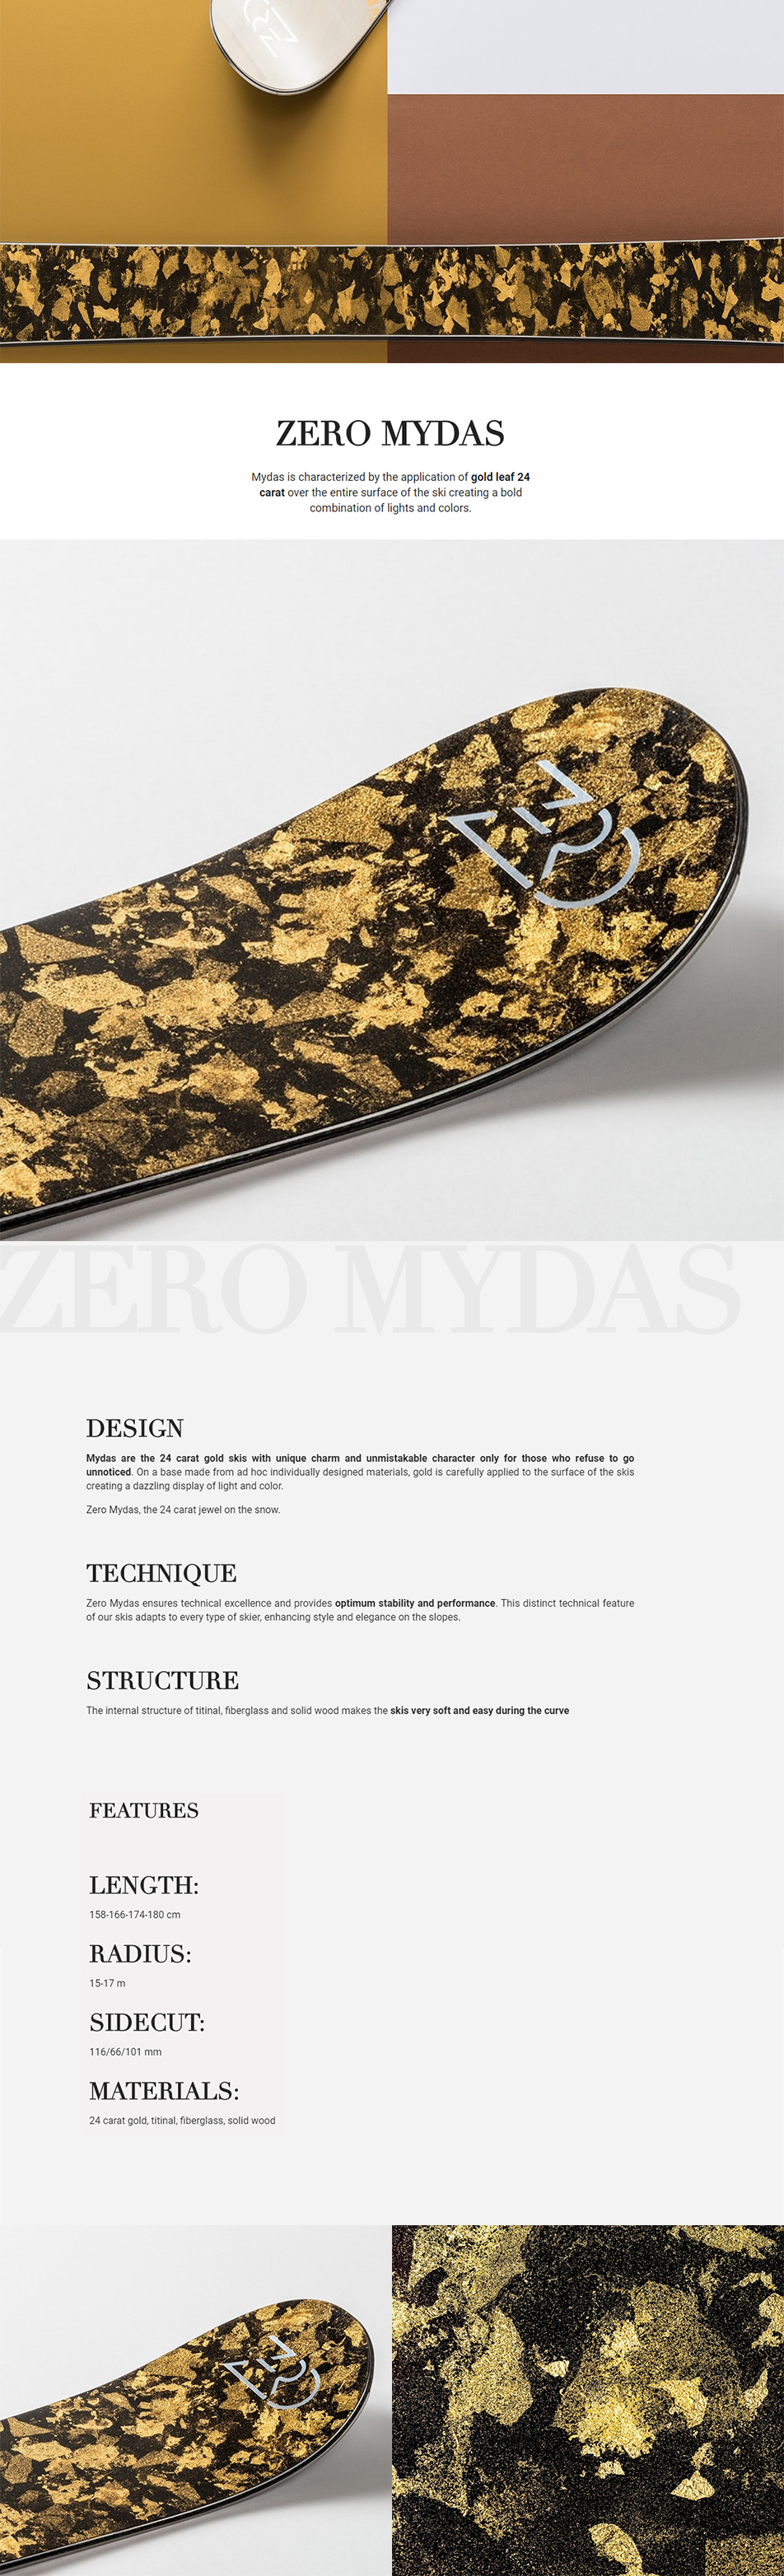 ZERO-MYDAS-D1_172904.jpg